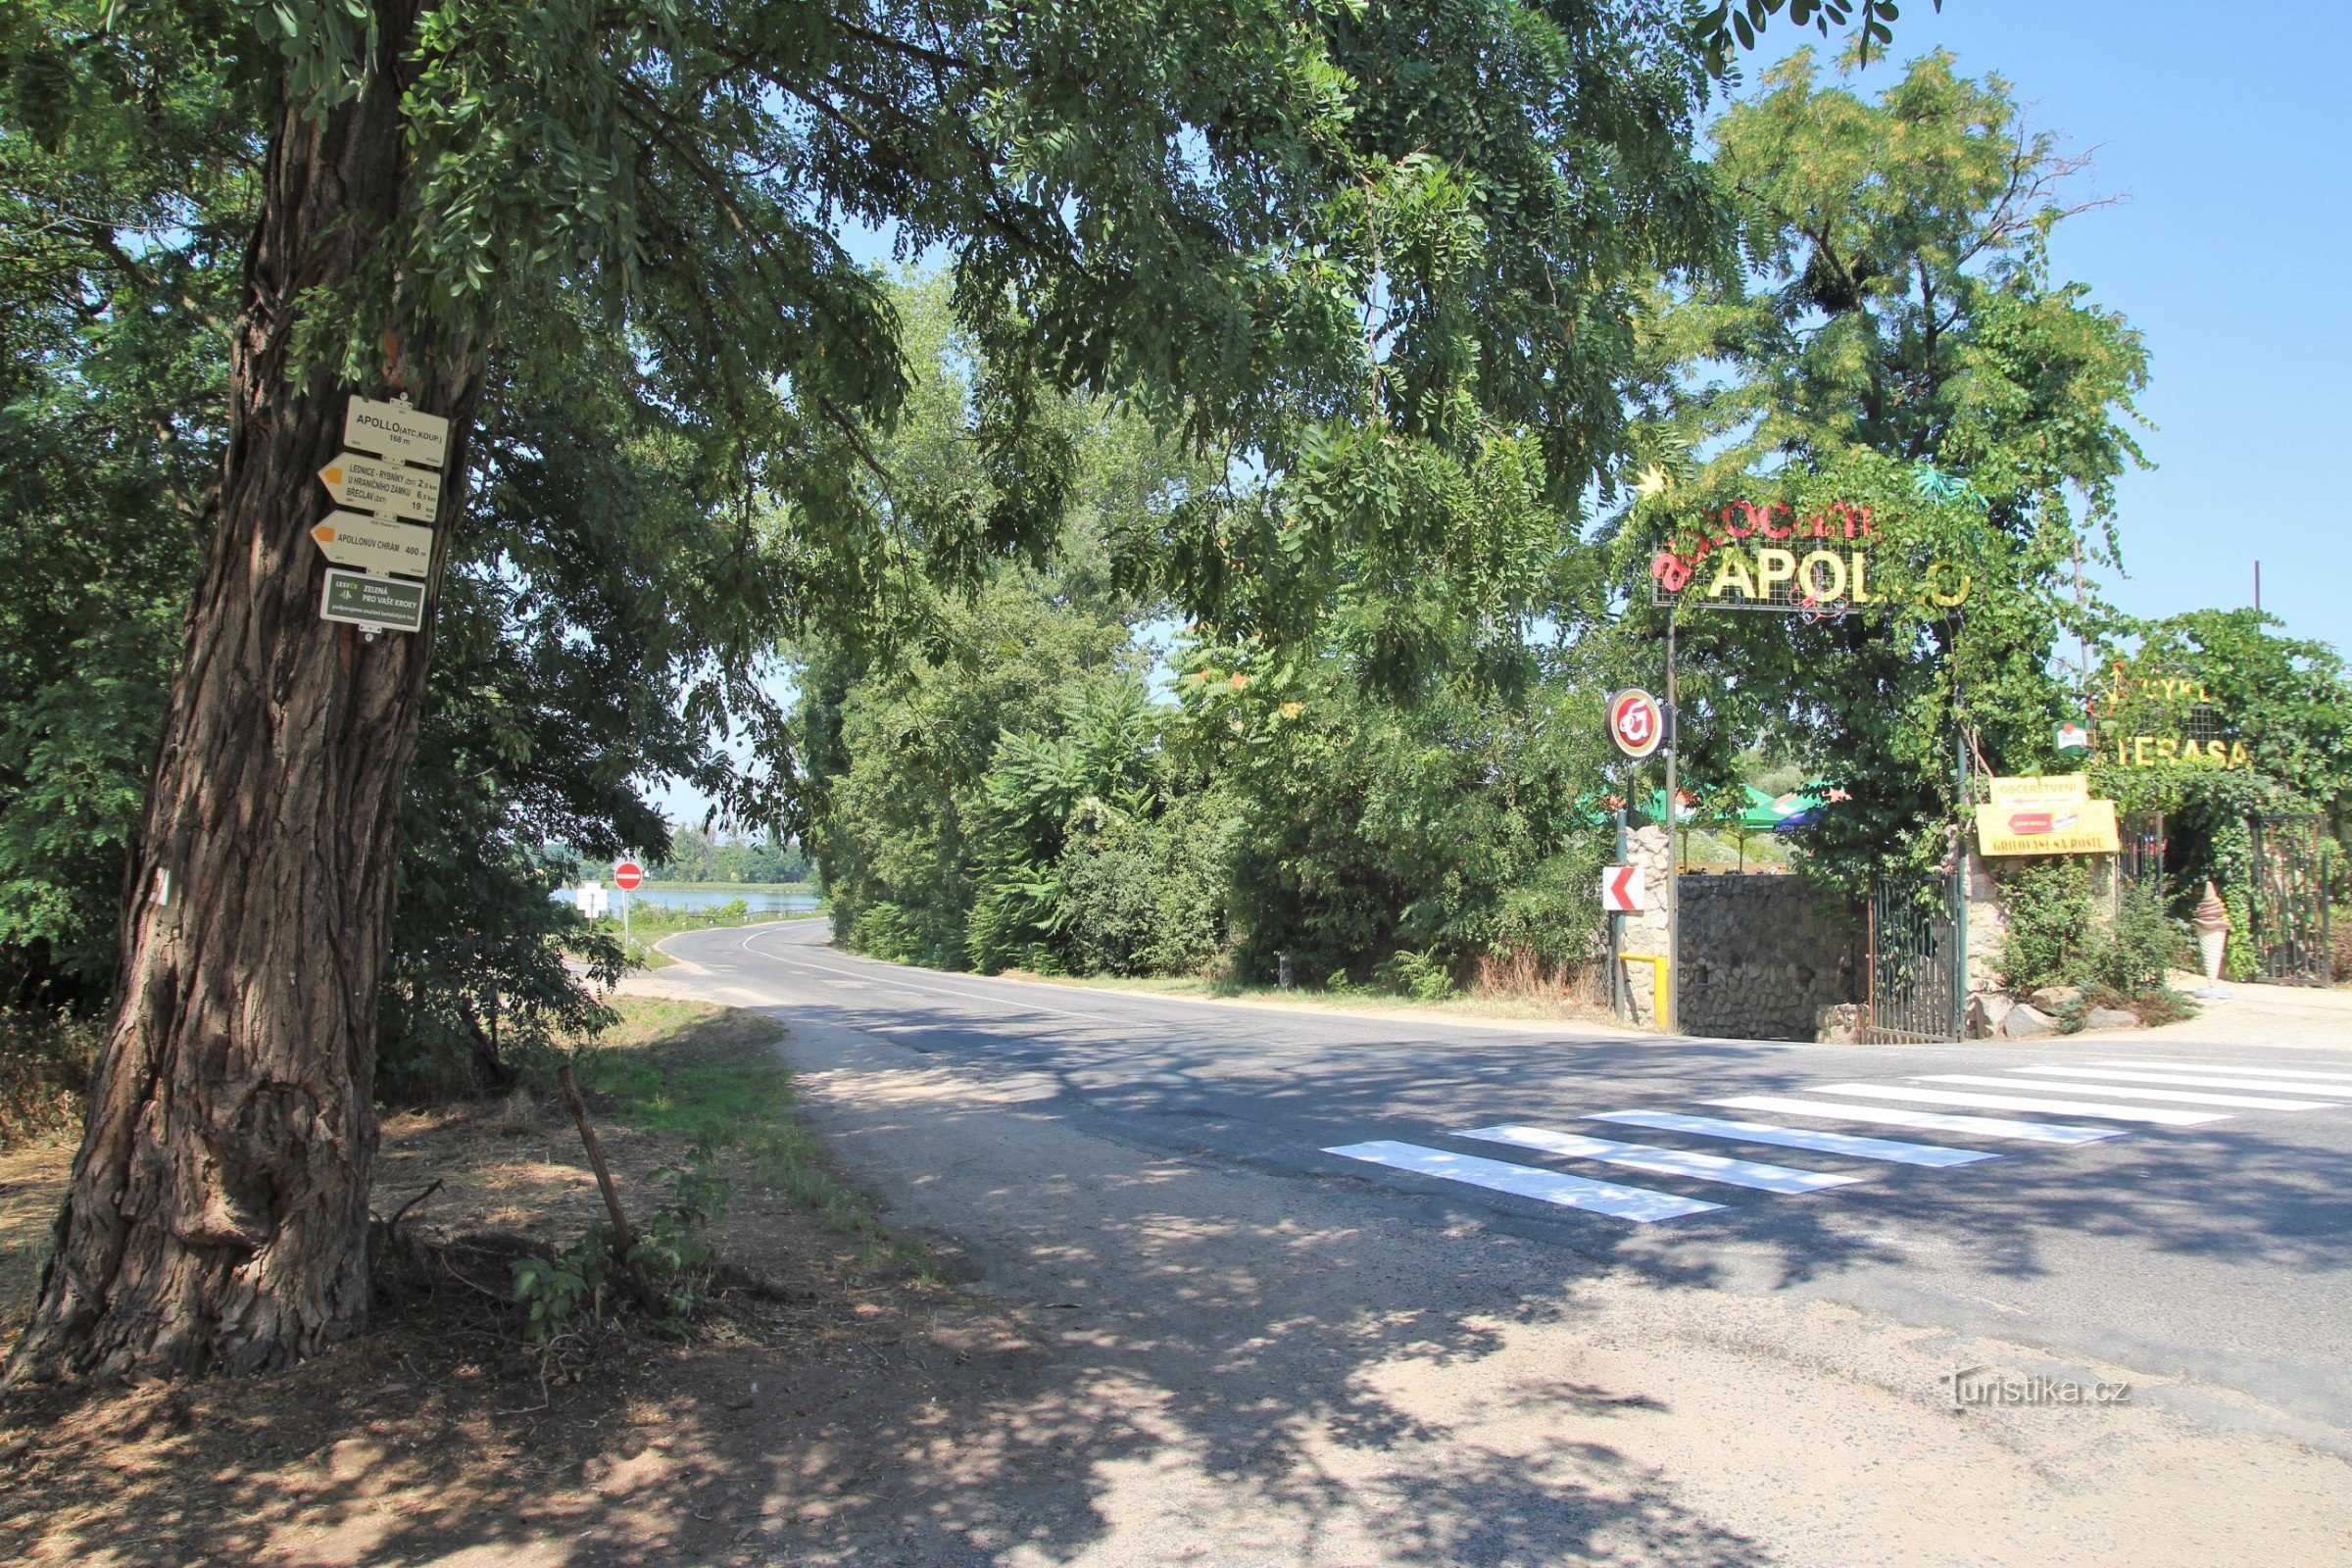 Der Touristenknotenpunkt Apollo befindet sich gegenüber dem Eingang des gleichnamigen Lagers